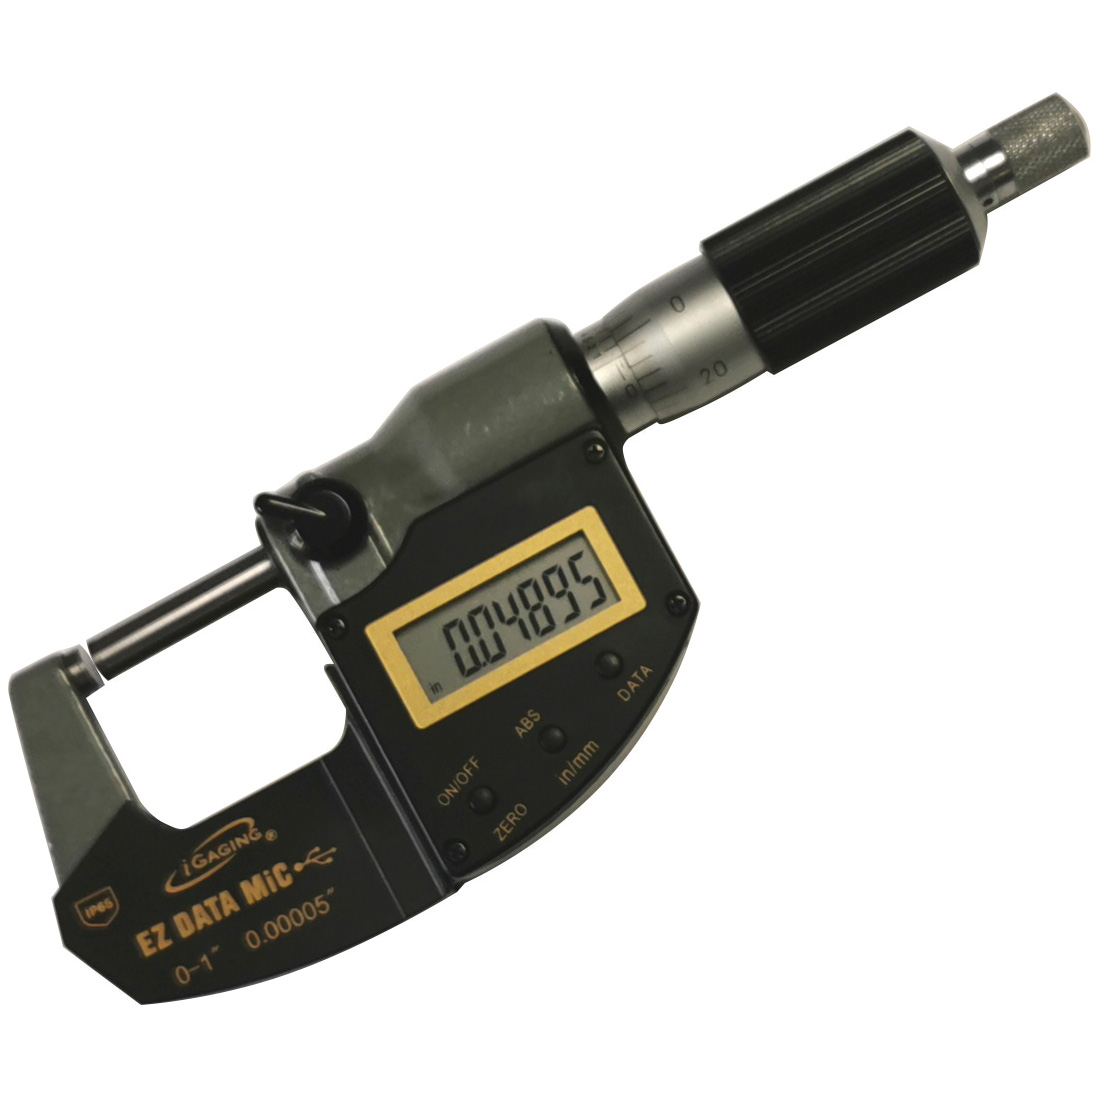 iGaging 0-1" iP65 EZ Data Twin-Force Digital Micrometer